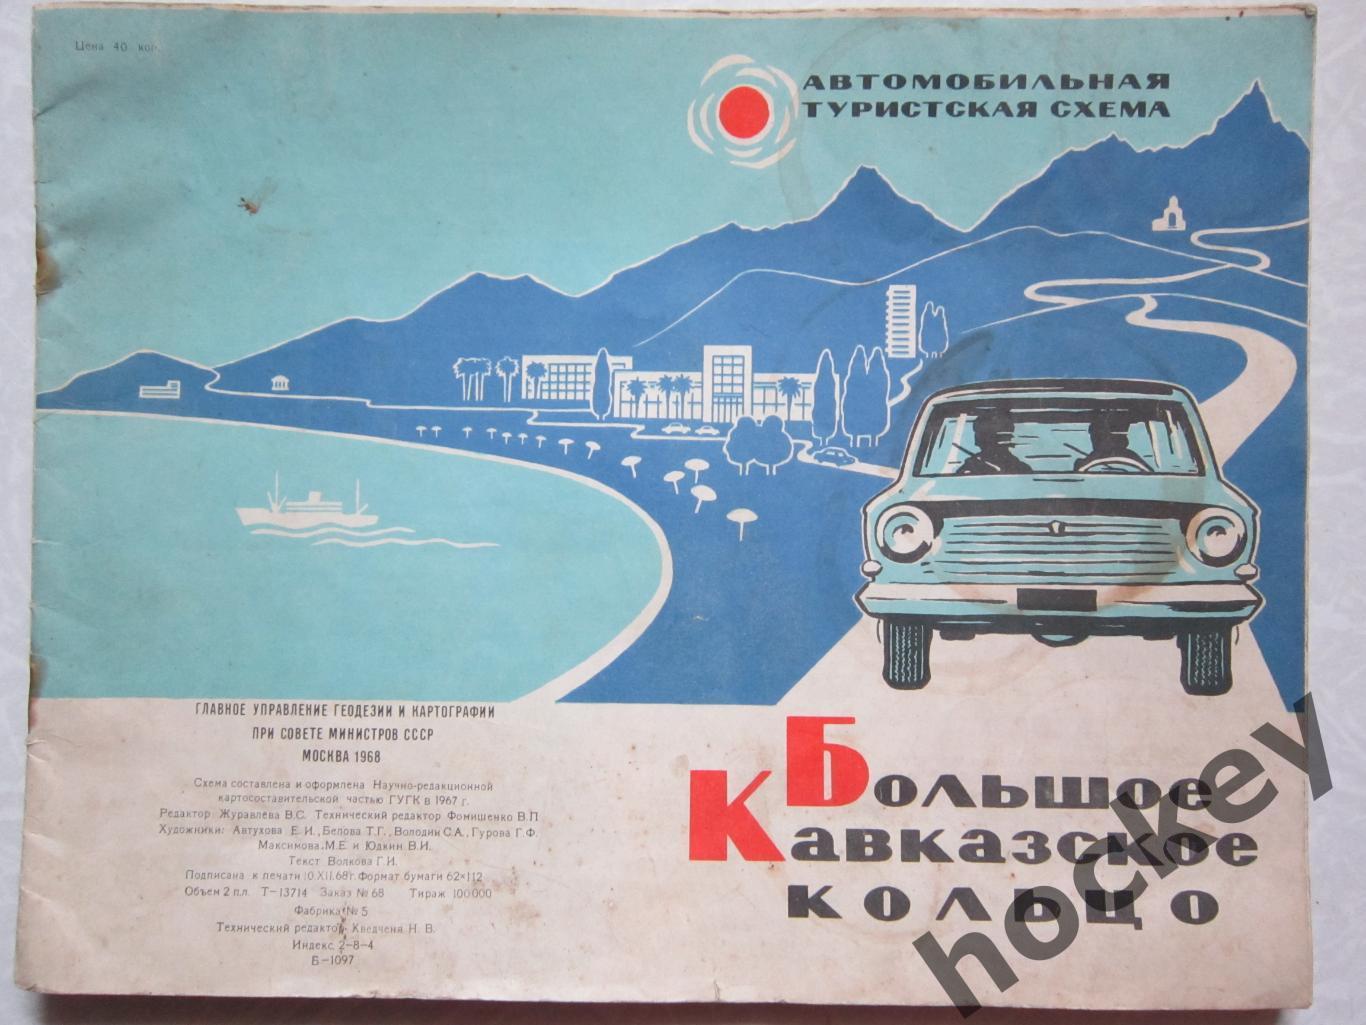 Карта: Большое Кавказское кольцо. Автомобильная туристская схема (1968 год)